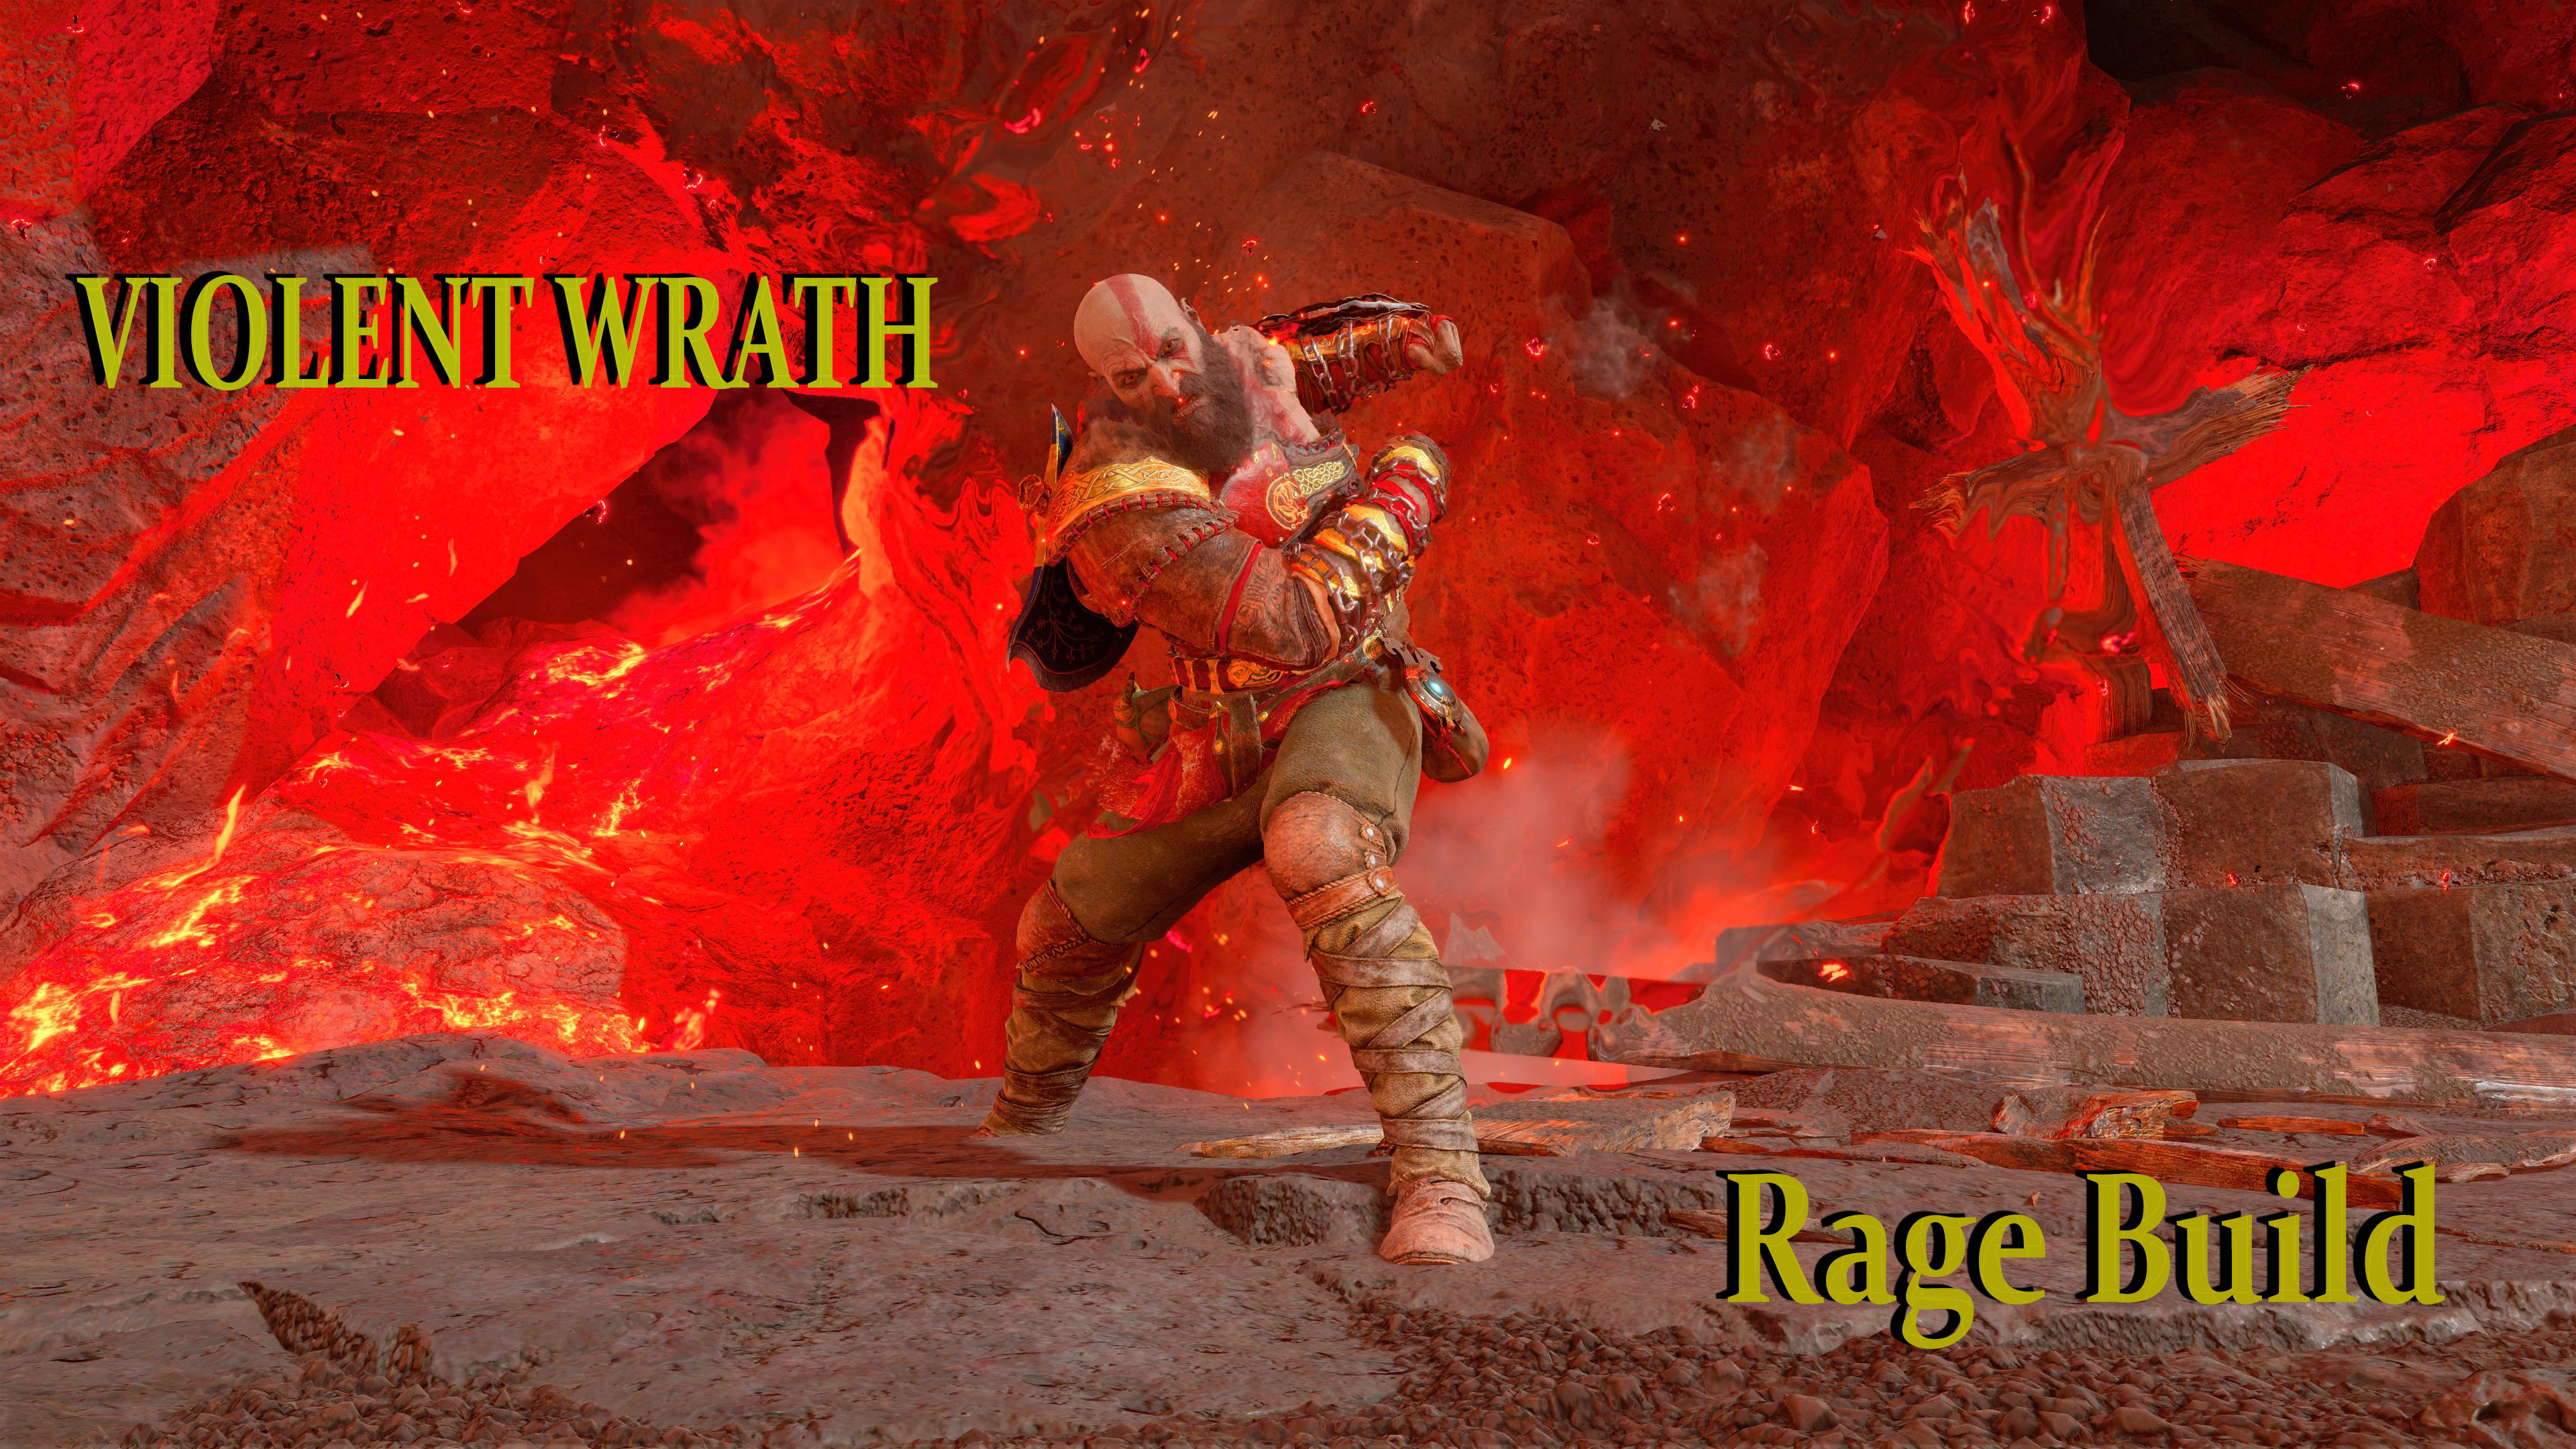 Rage of Sparta? : r/GodofWar